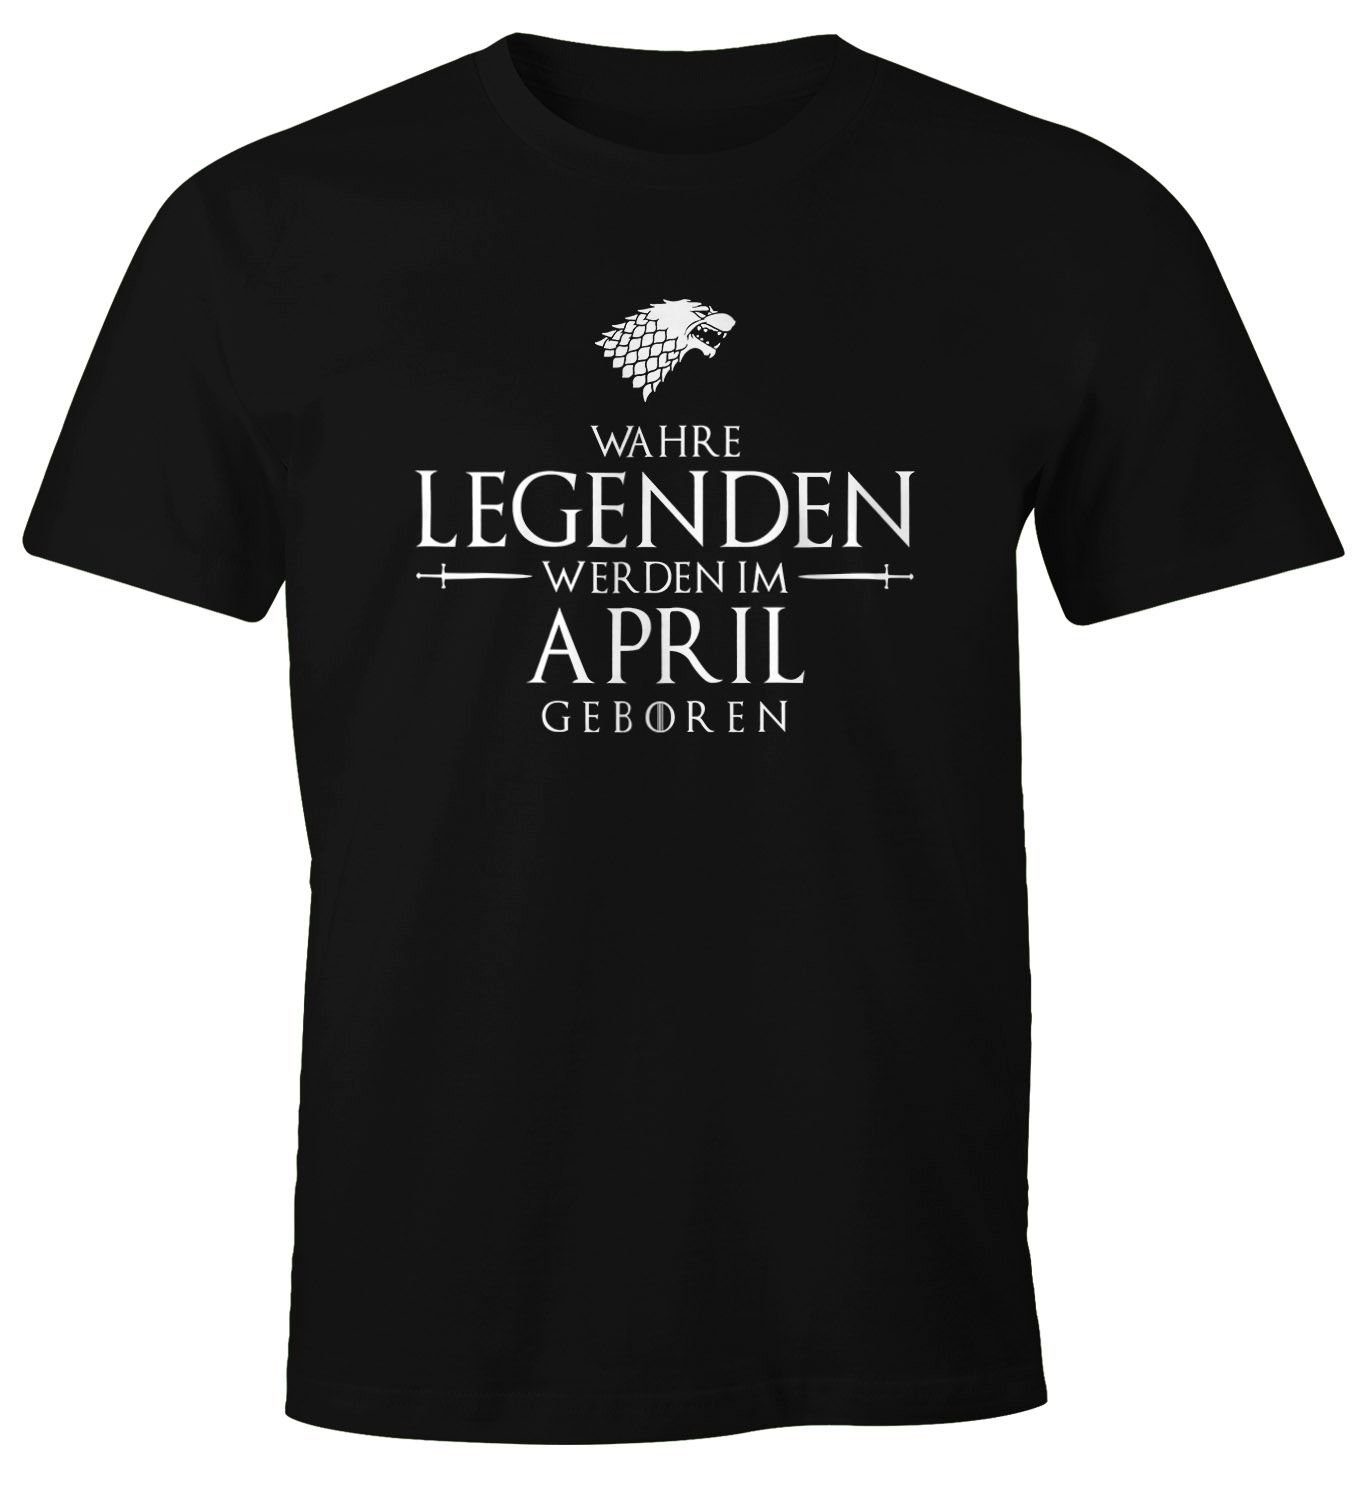 werden Legenden Wahre geboren Object] Print-Shirt Fun-Shirt schwarz im mit Print Herren MoonWorks [object Moonworks® T-Shirt April